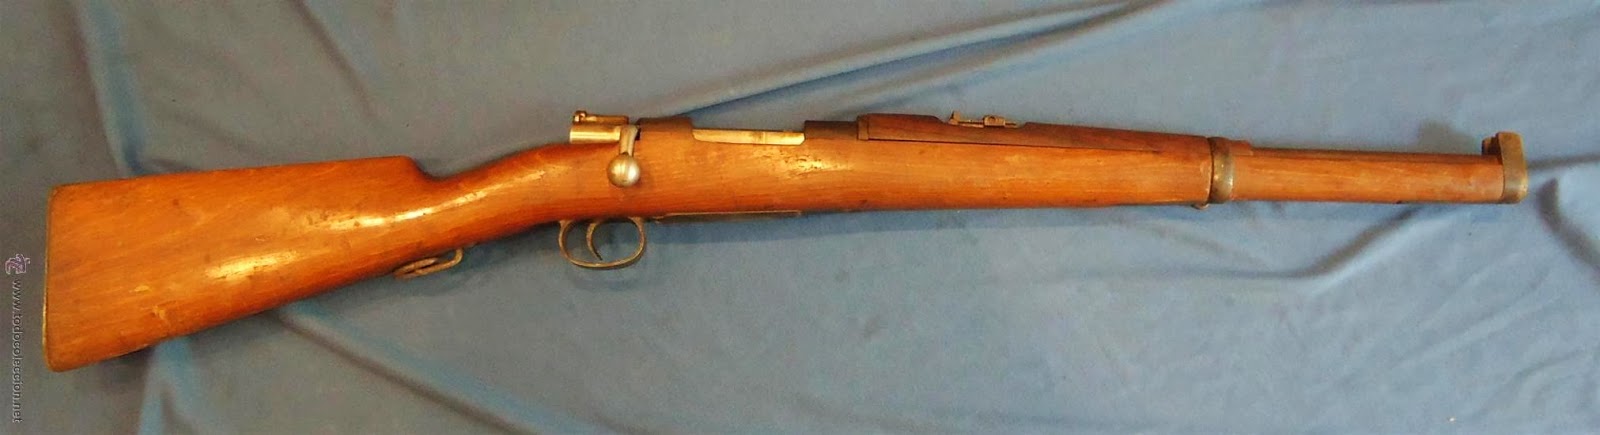 Carabina española Mauser 1895,tambien conocida como «Tercerola»